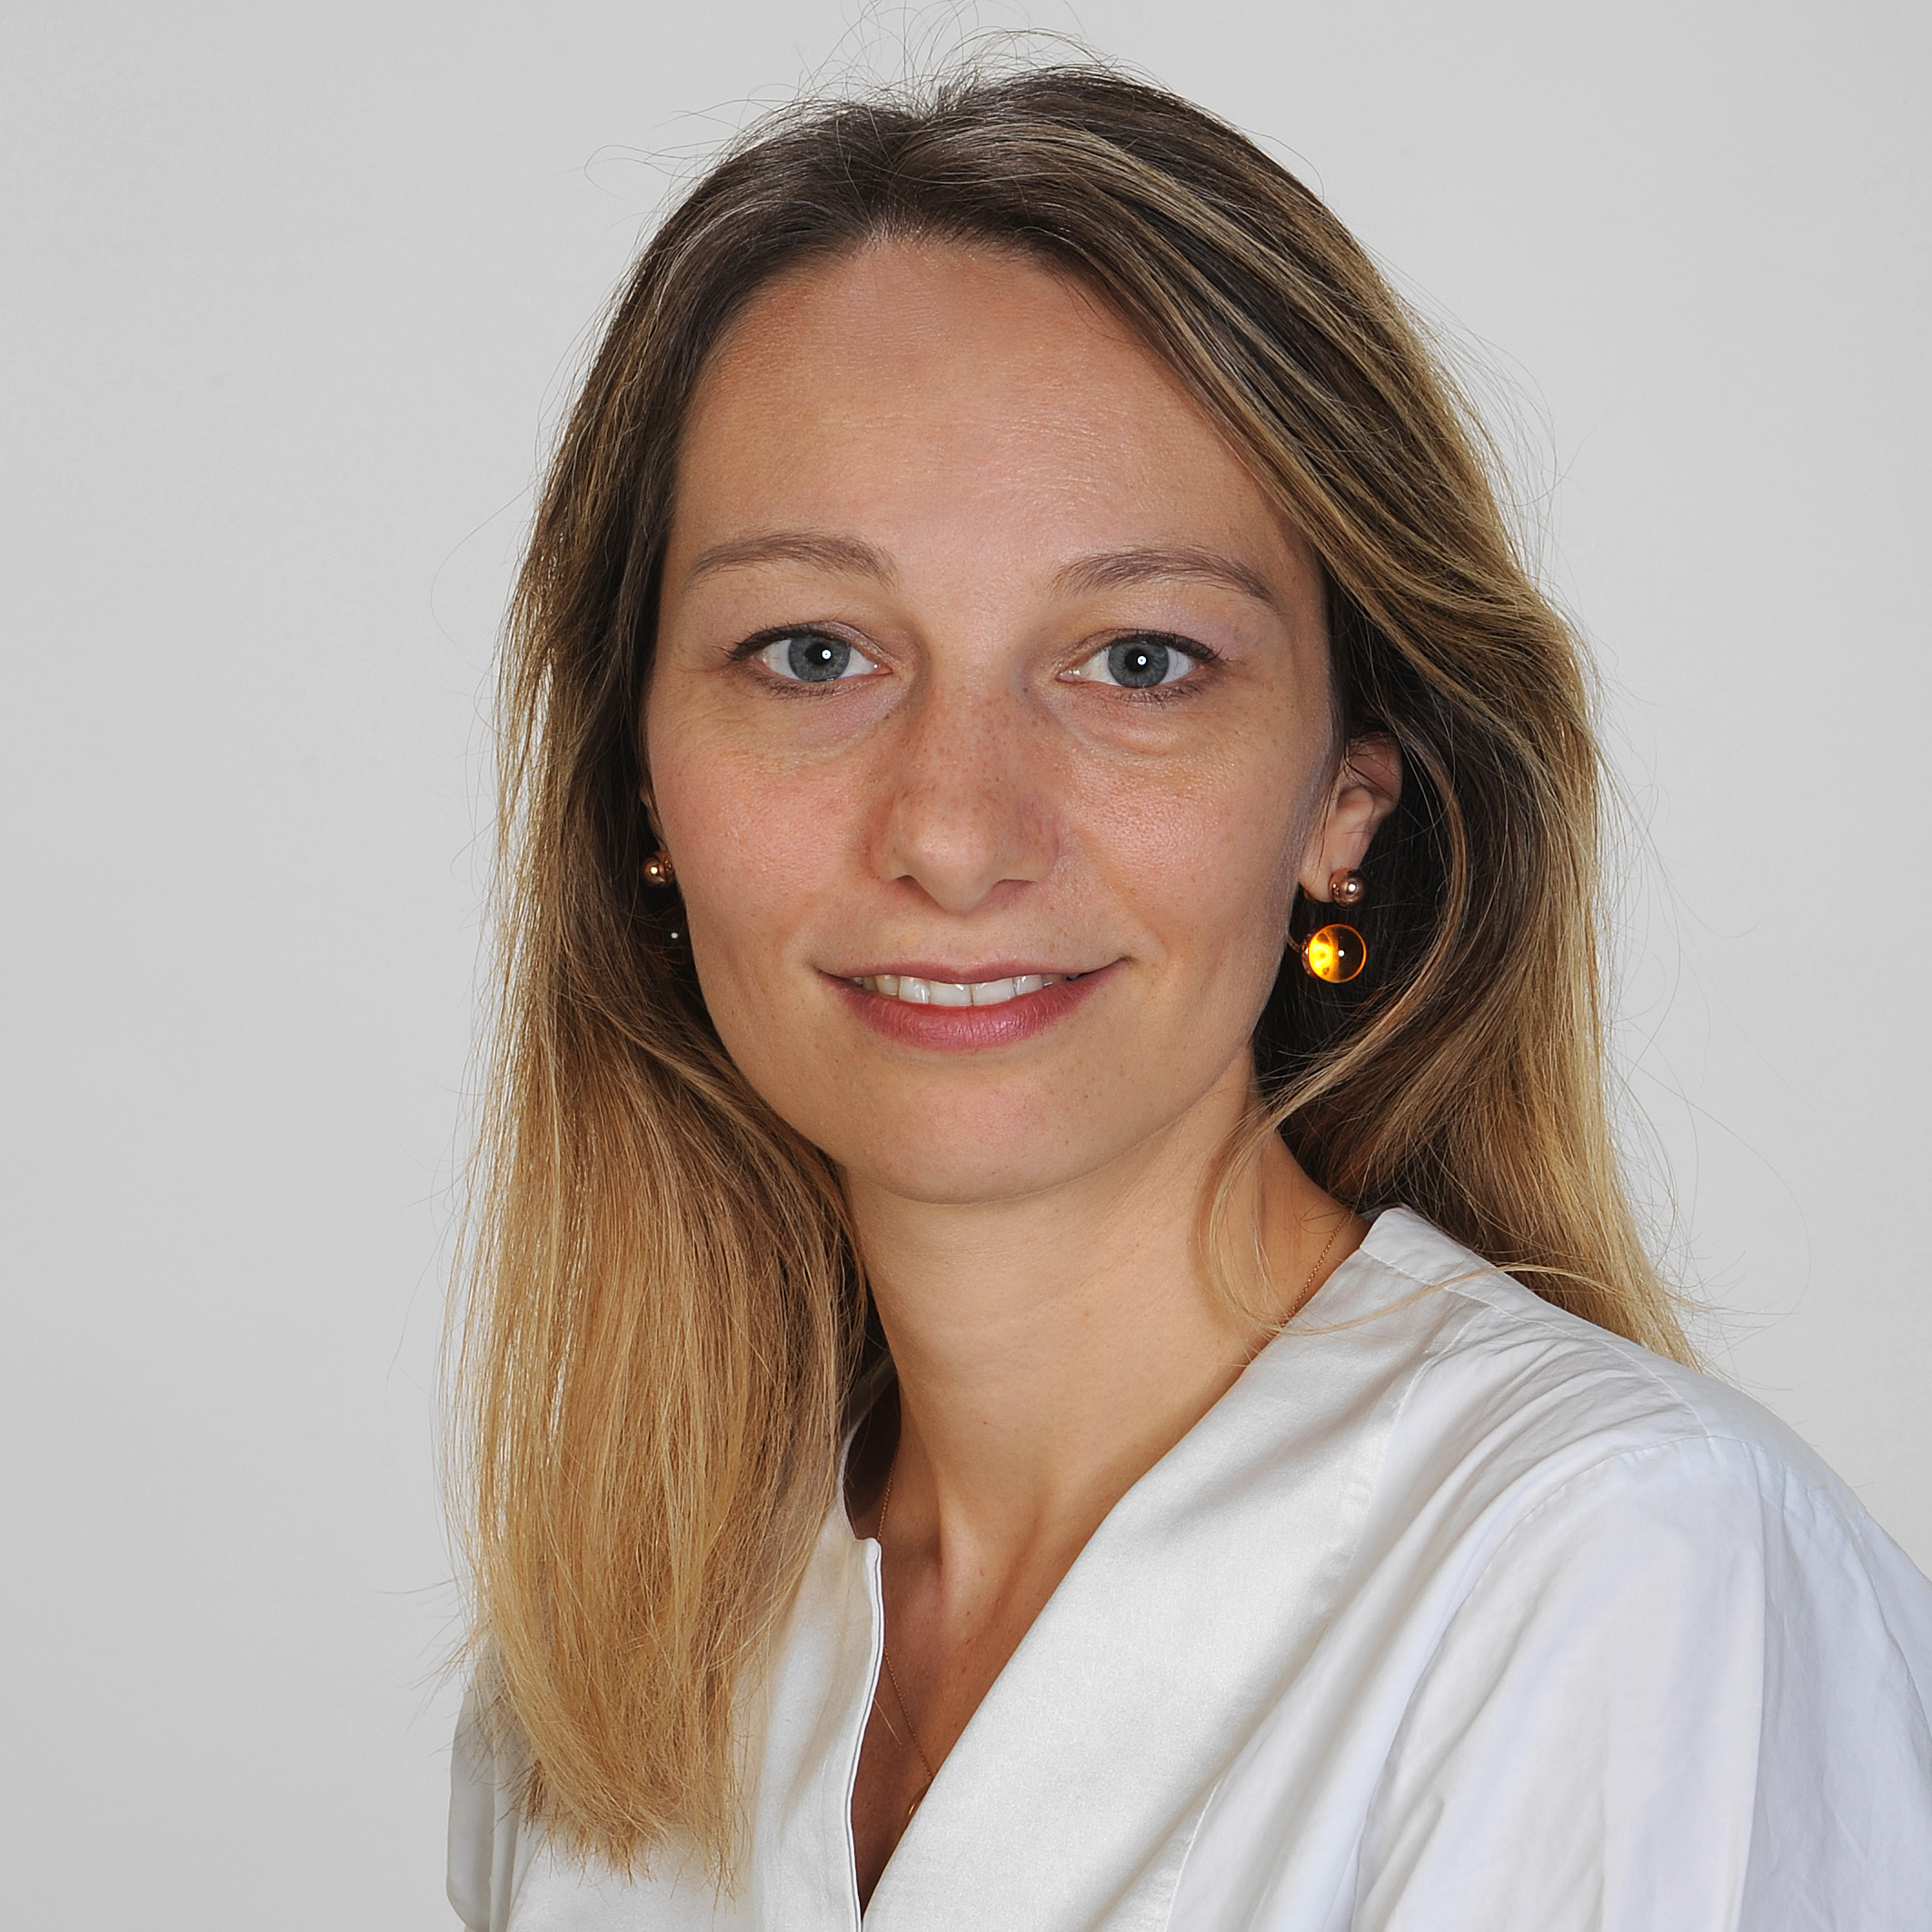 Prof. Dr. med. Chiara Magnani, PhD